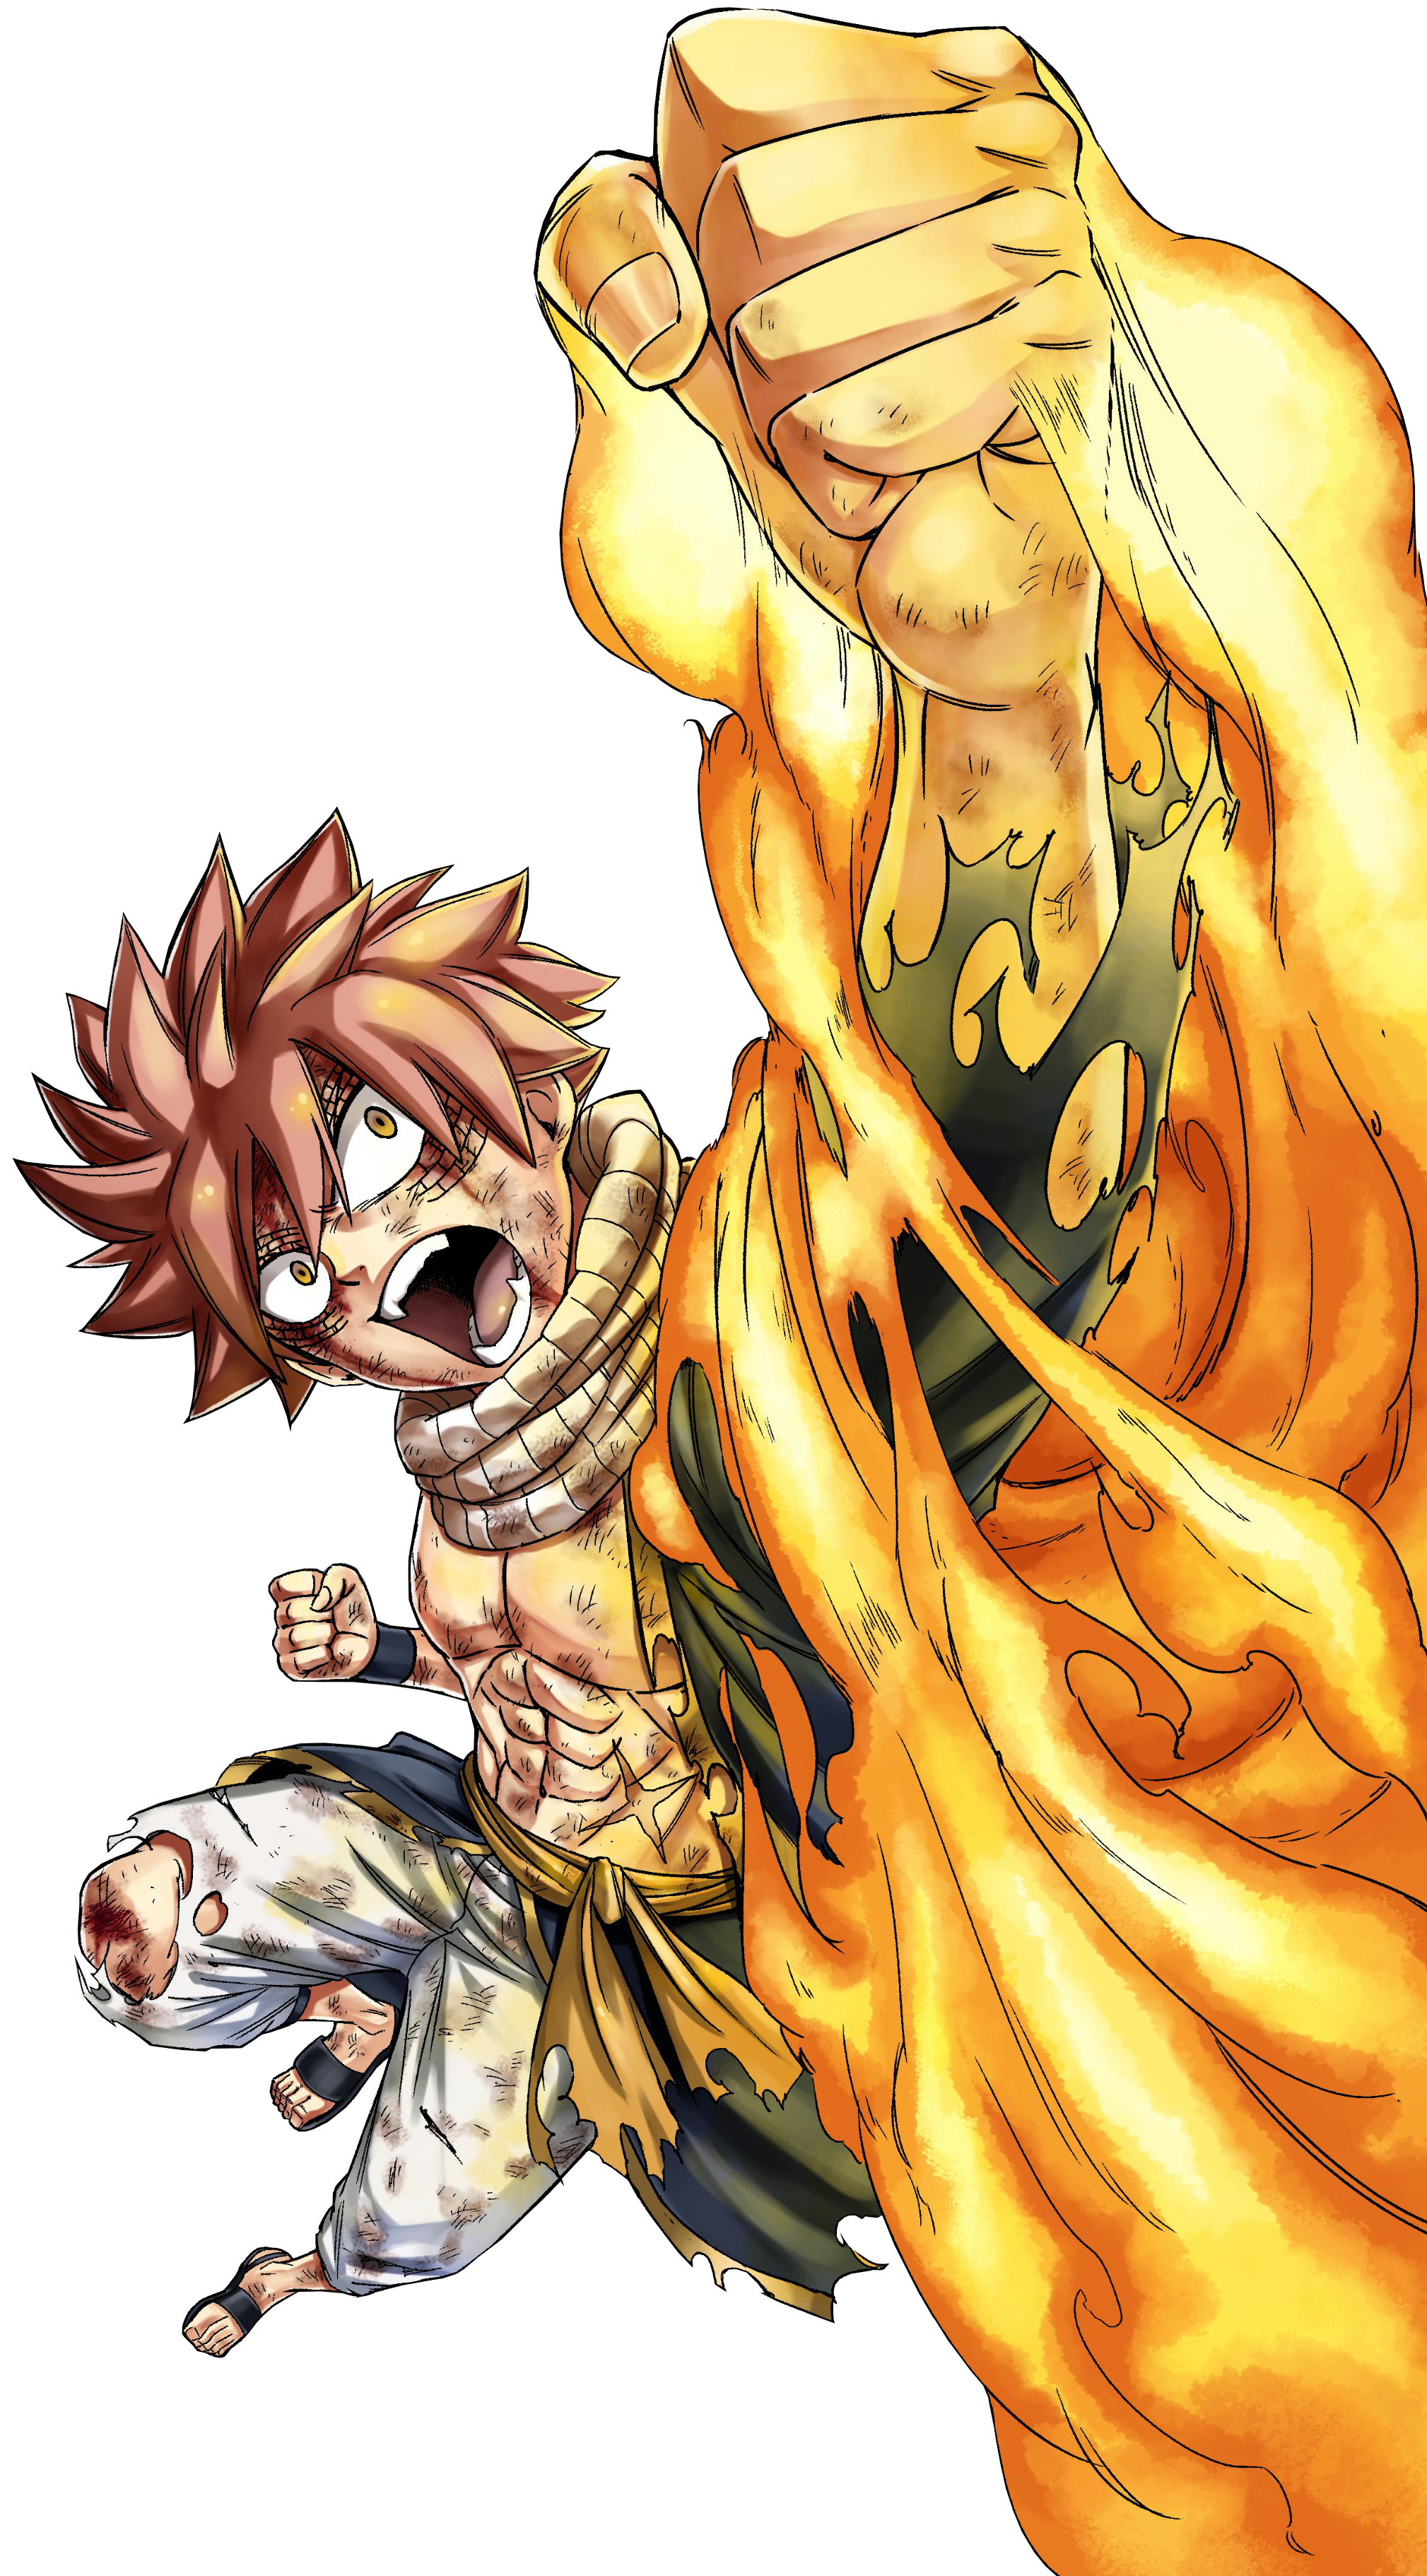 Ignia Flame Natsu vs Seven Dragon Slayer Flame Natsu - Battles